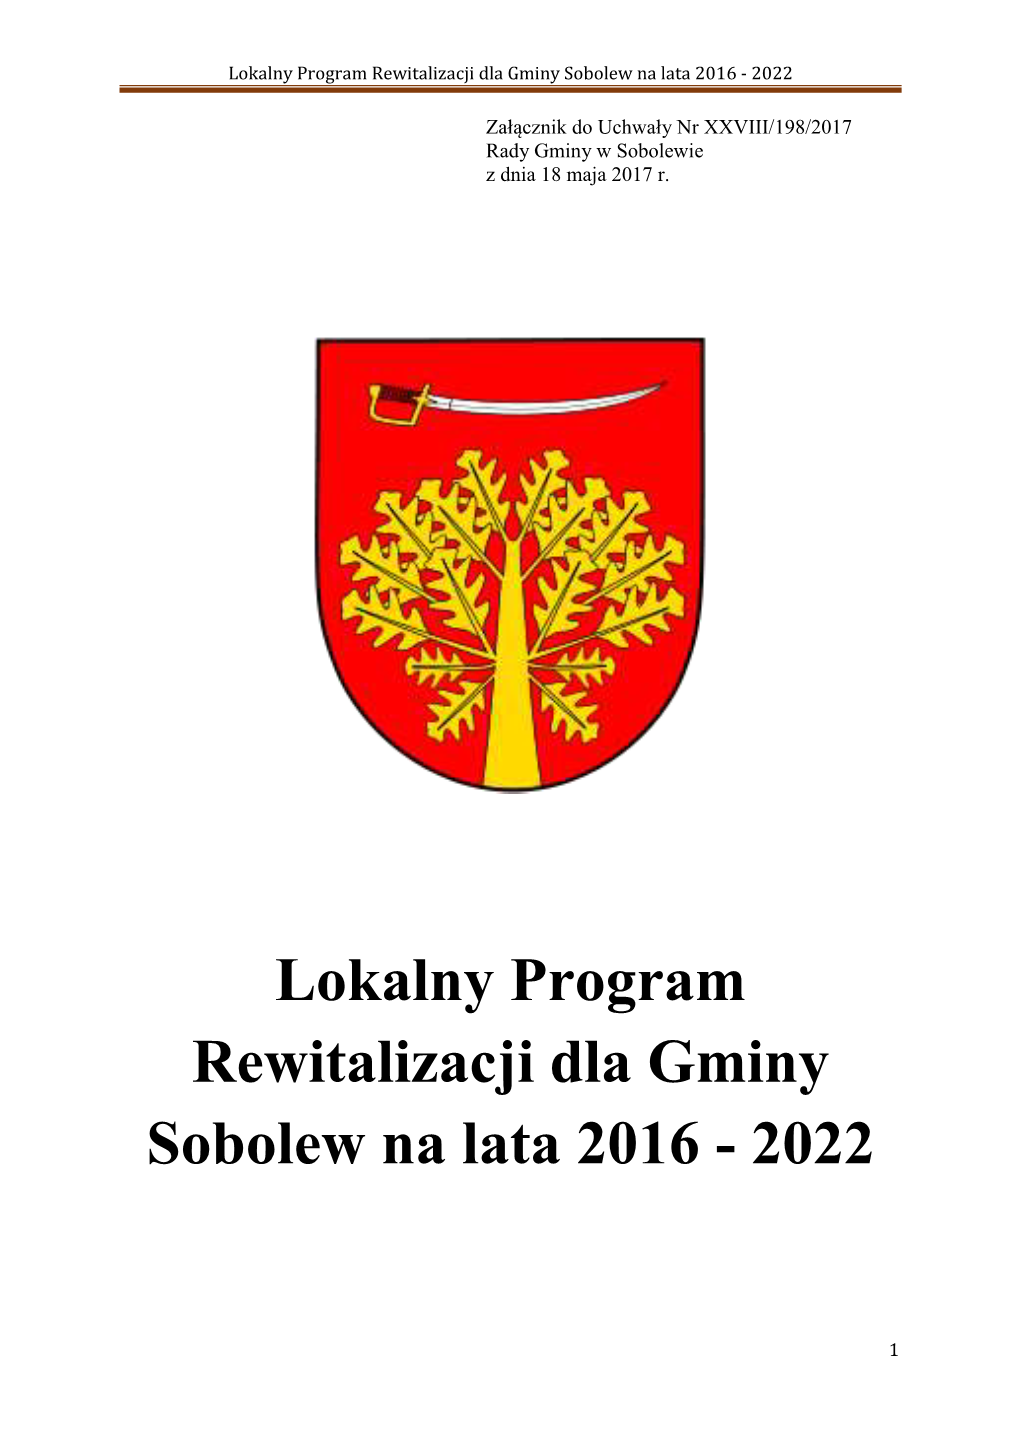 Lokalny Program Rewitalizacji Dla Gminy Sobolew Na Lata 2016 - 2022